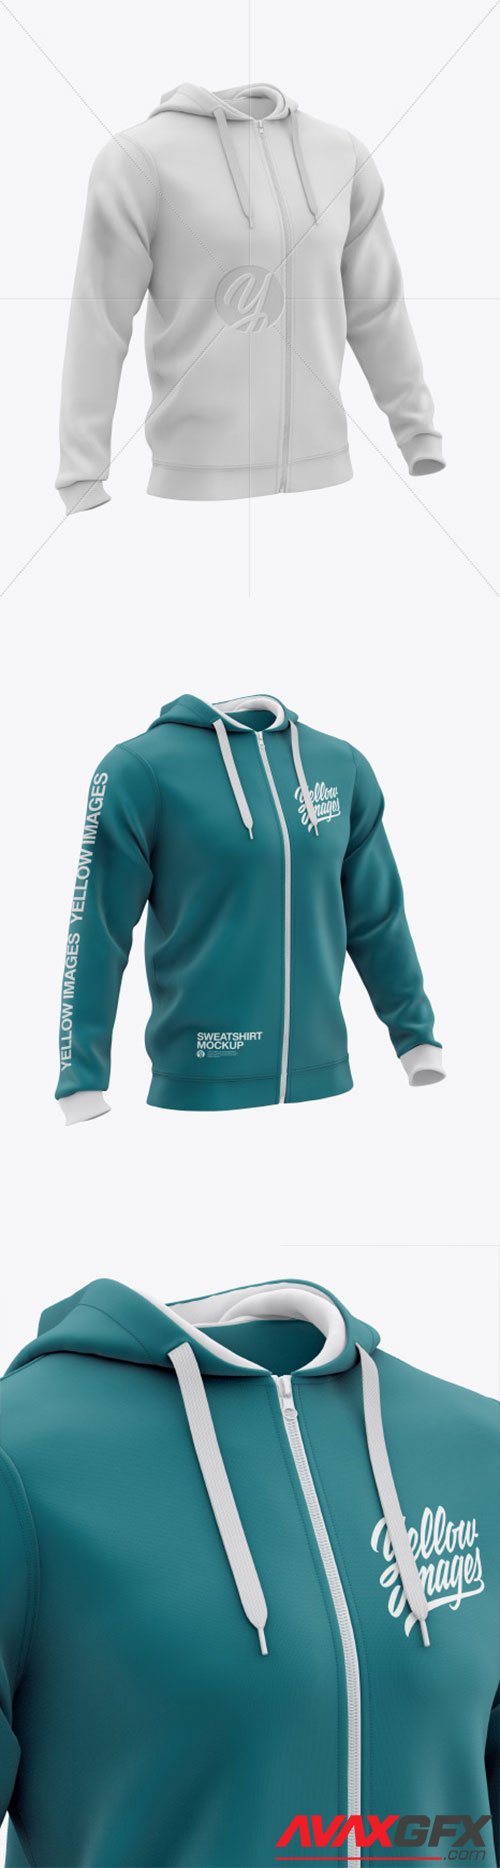 Download Men's Full-Zip Hooded Sweatshirt Mockup 51863 » AVAXGFX ...